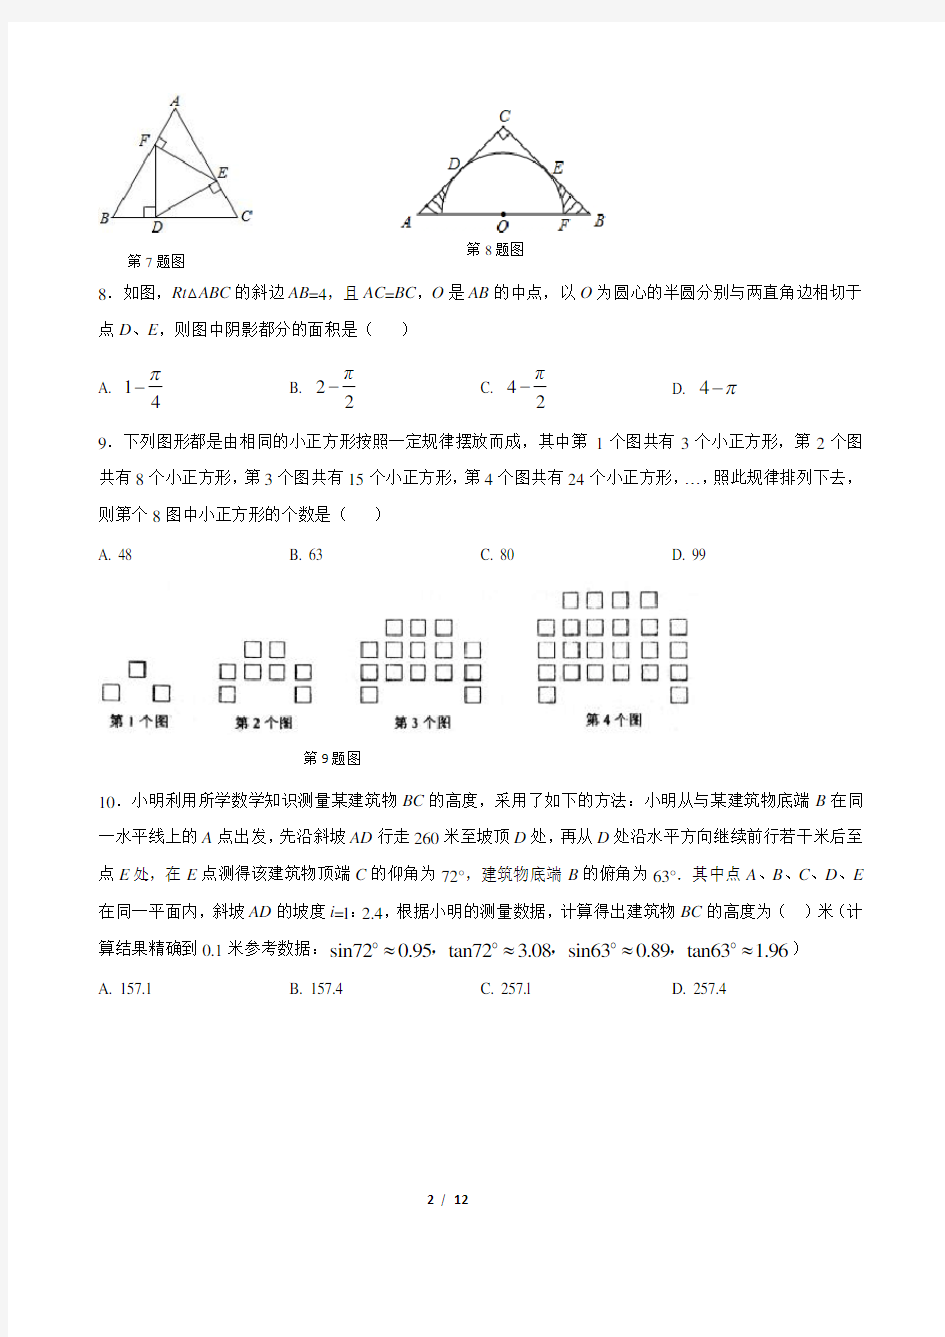 重庆一中初2018级17-18学年度下期半期考试数学试题及答案